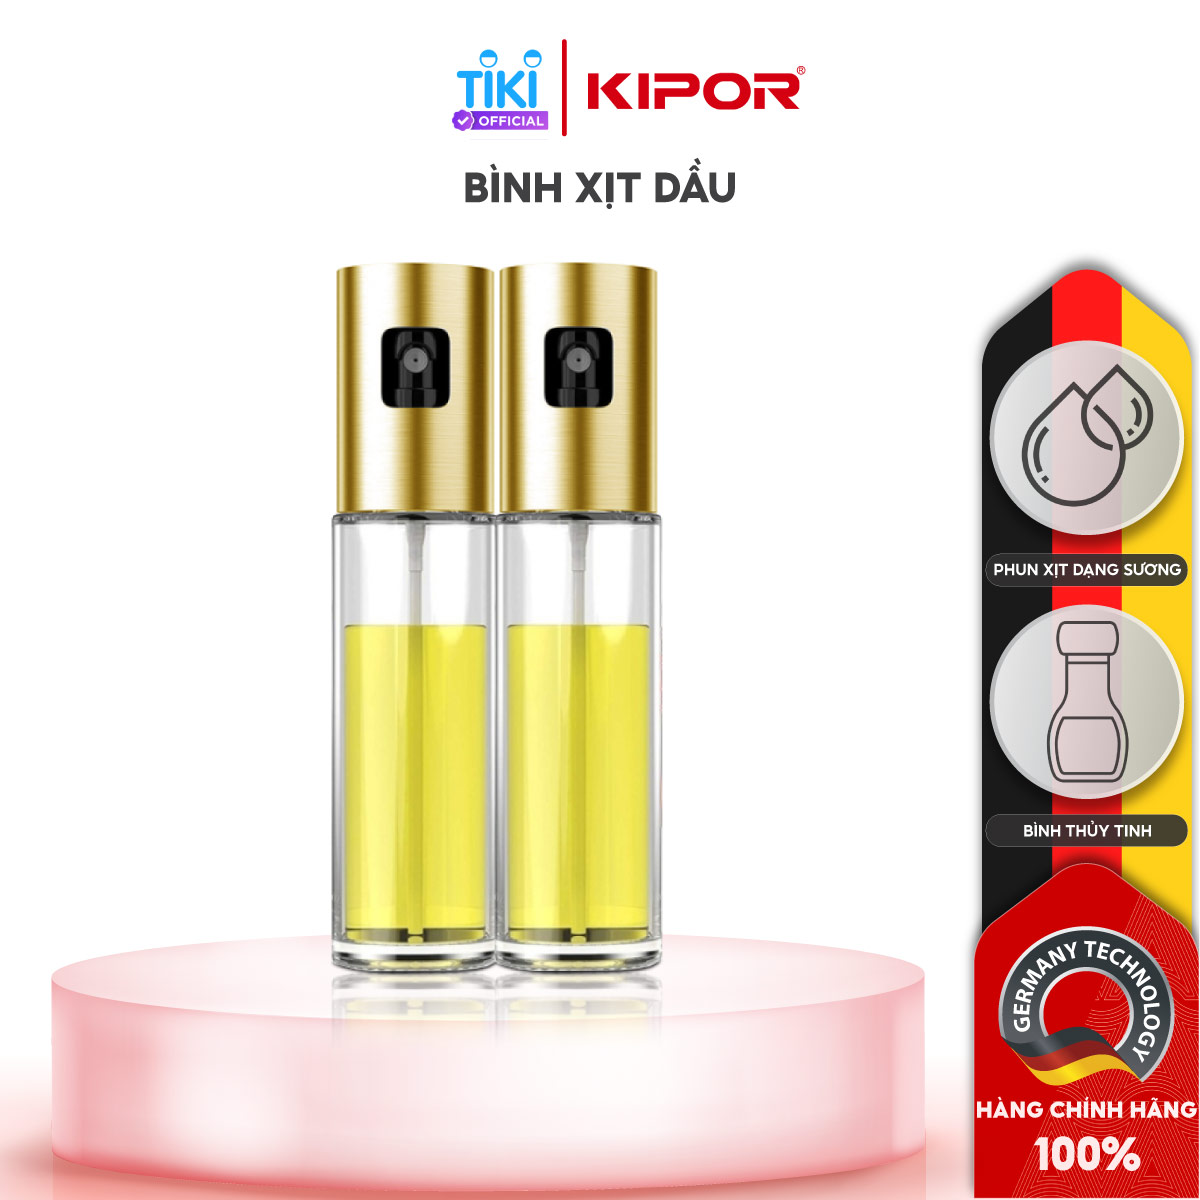 Bình xịt dầu ăn phun sương cầm tay KIPOR KP-XD01 - Chai thuỷ tinh cao cấp - Tiện lợi, dễ sử dụng